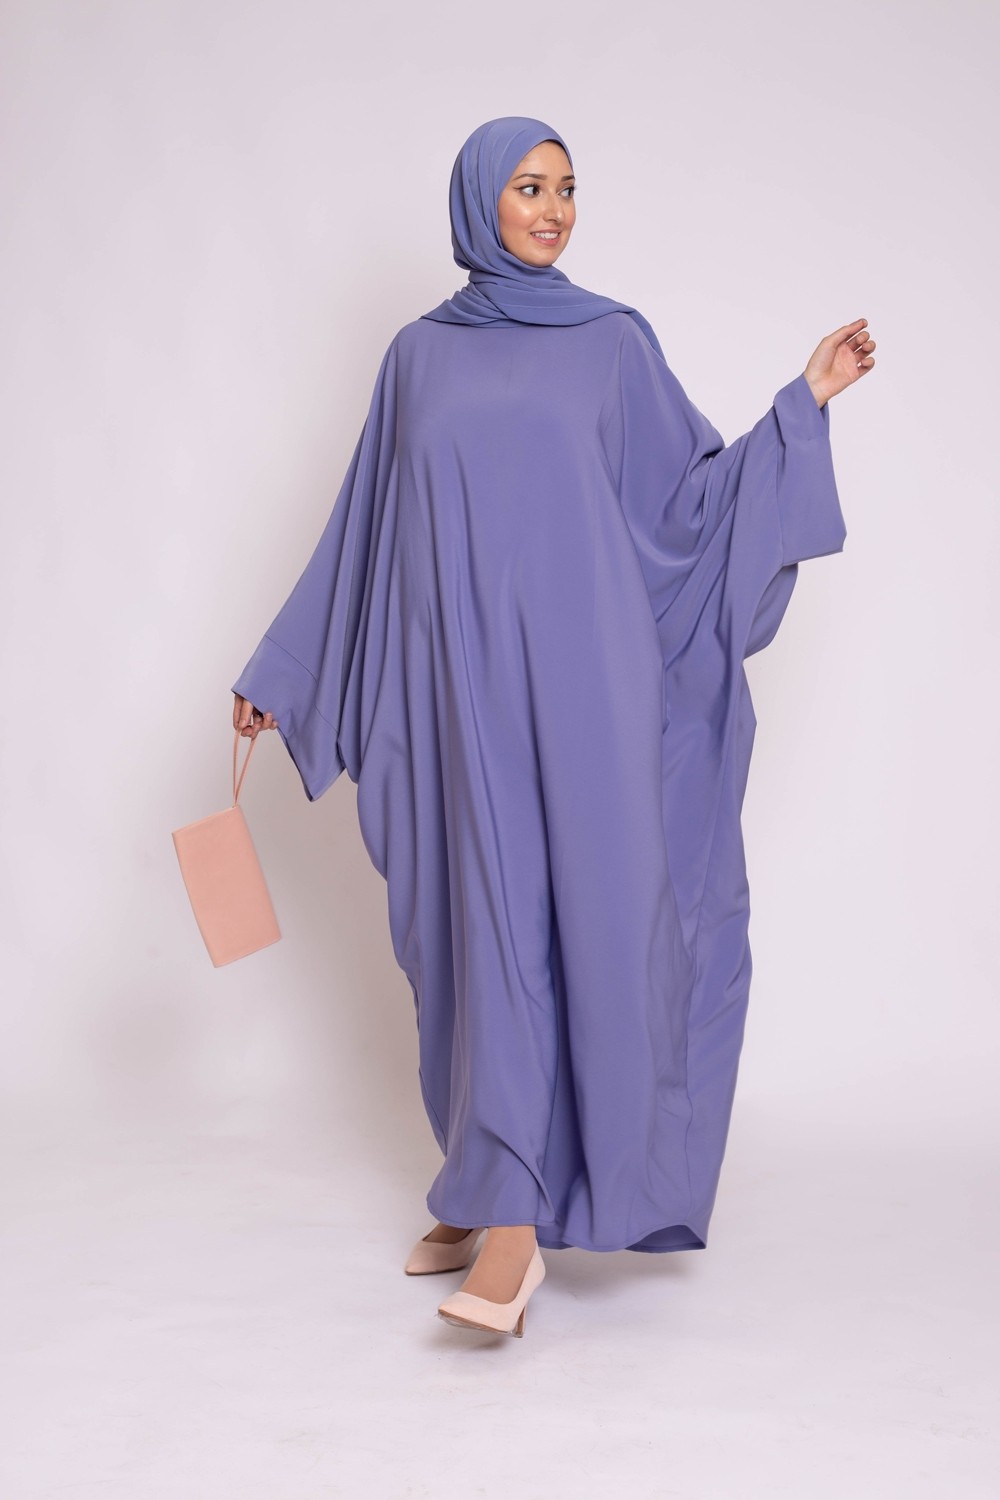 Abaya hijab kristal denim nouveautés mode musulmane boutique pour femme